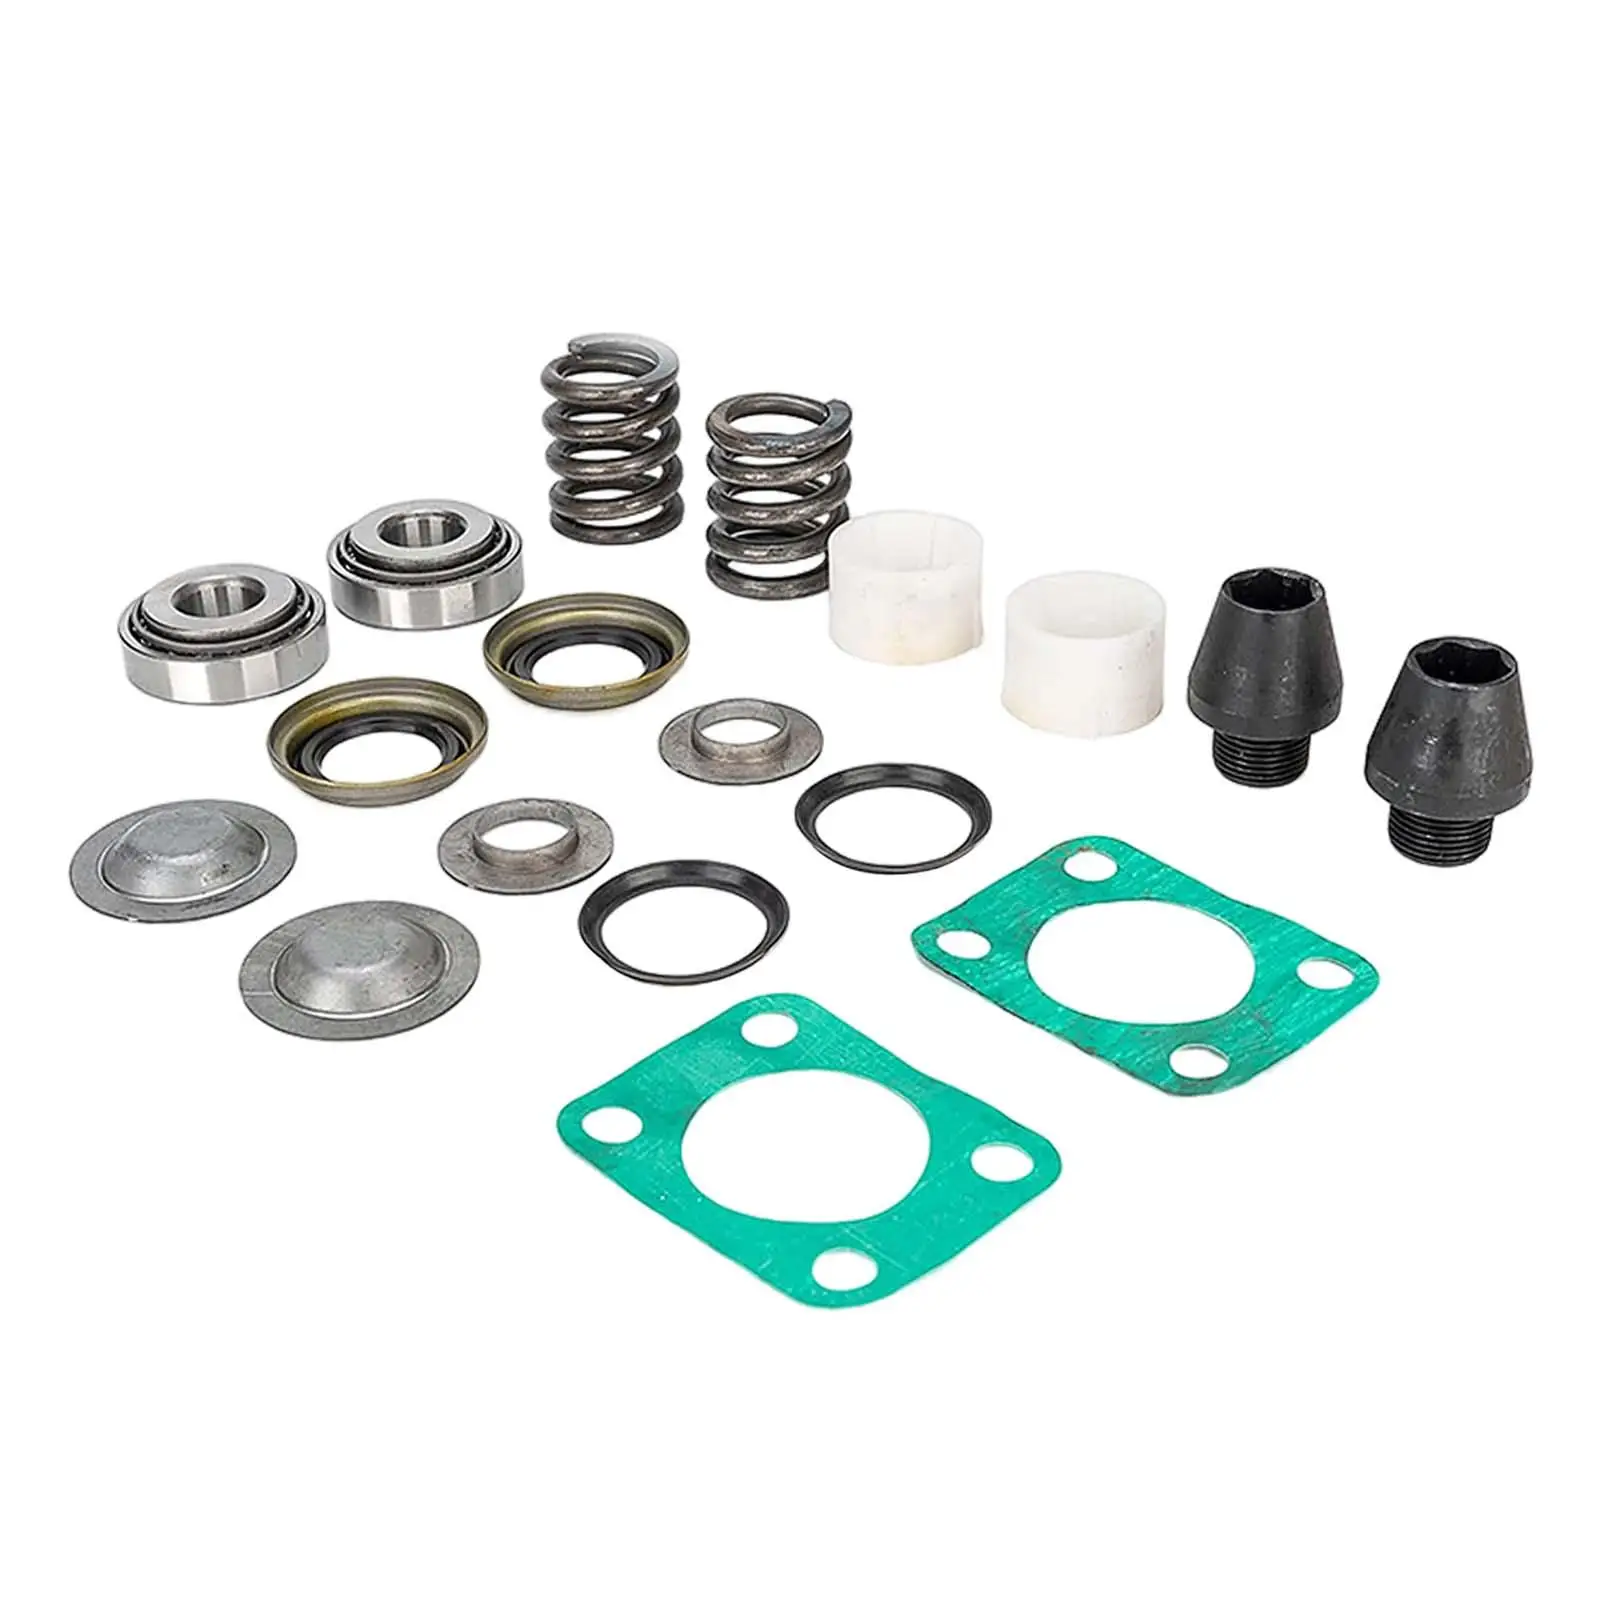 Kingpin Bearing Seal Rebuild Kit 706395x Replace Parts 620180 41886 37300 for GM